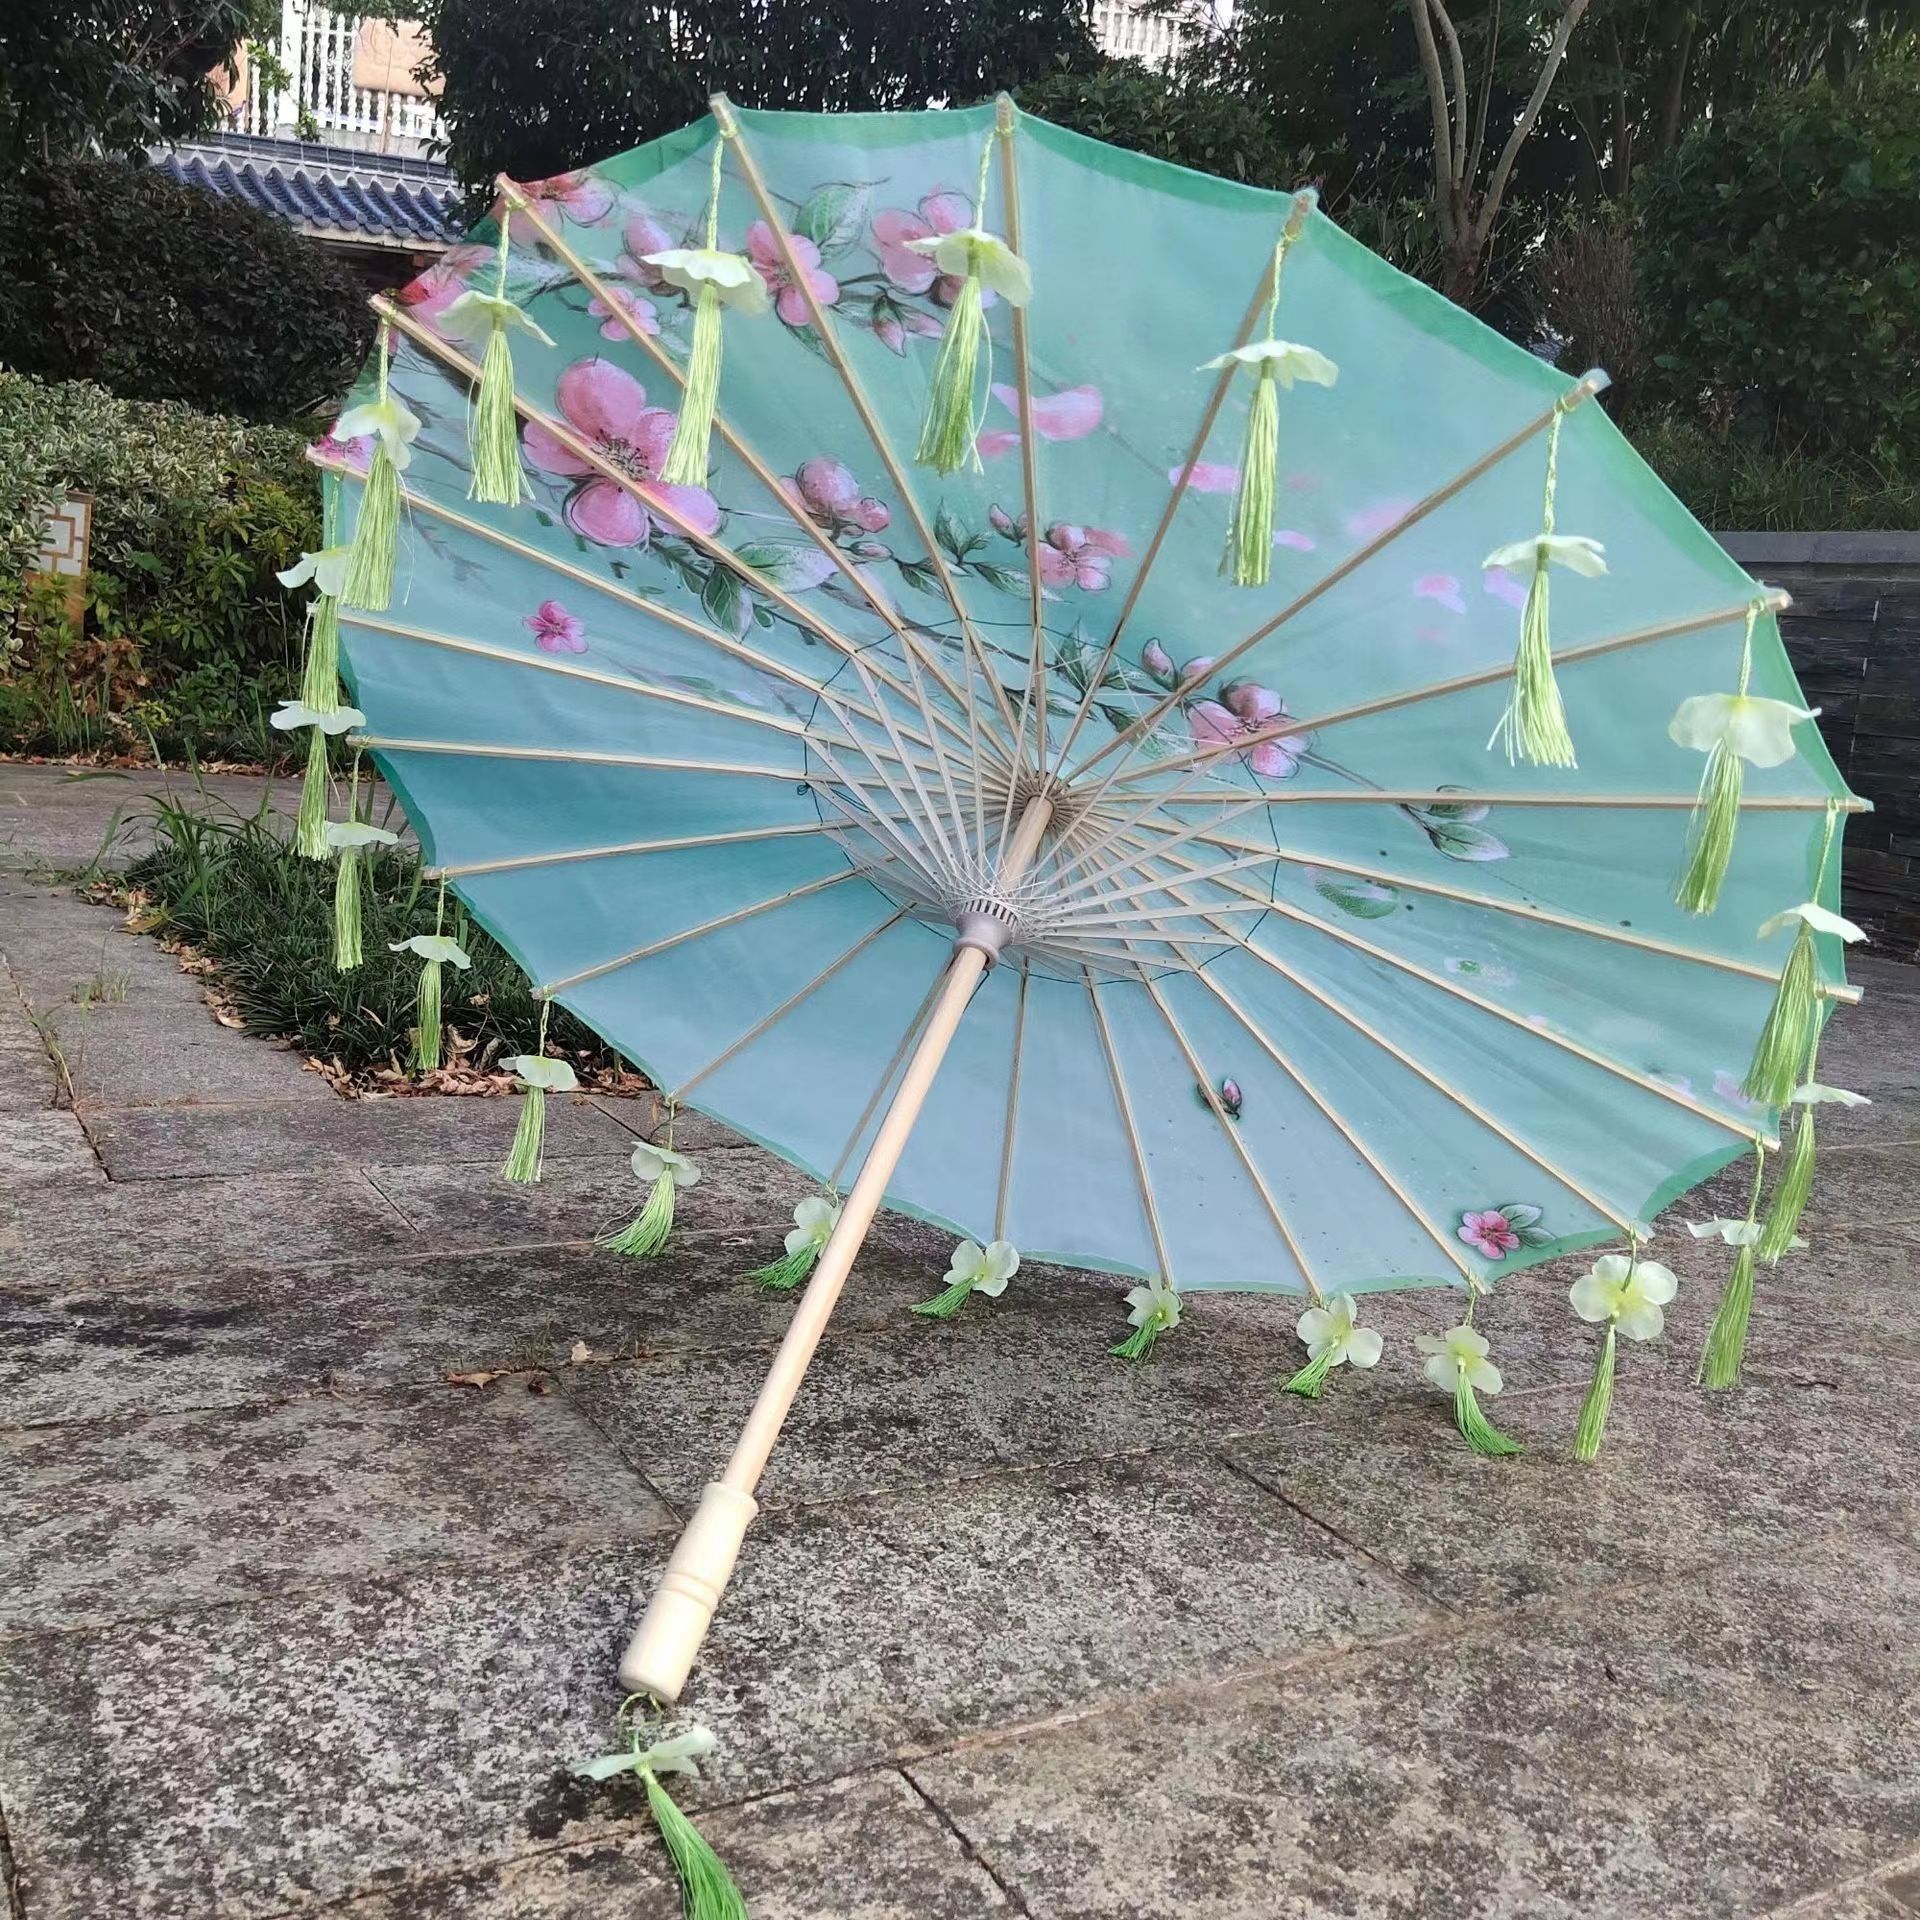 Цветы кисти зонтики. Танец с зонтиками. Цветение зонтик примеры. Как сделать зонтик для танца своими руками. Китайский зонтик из бамбука с шелком изготовление видео.